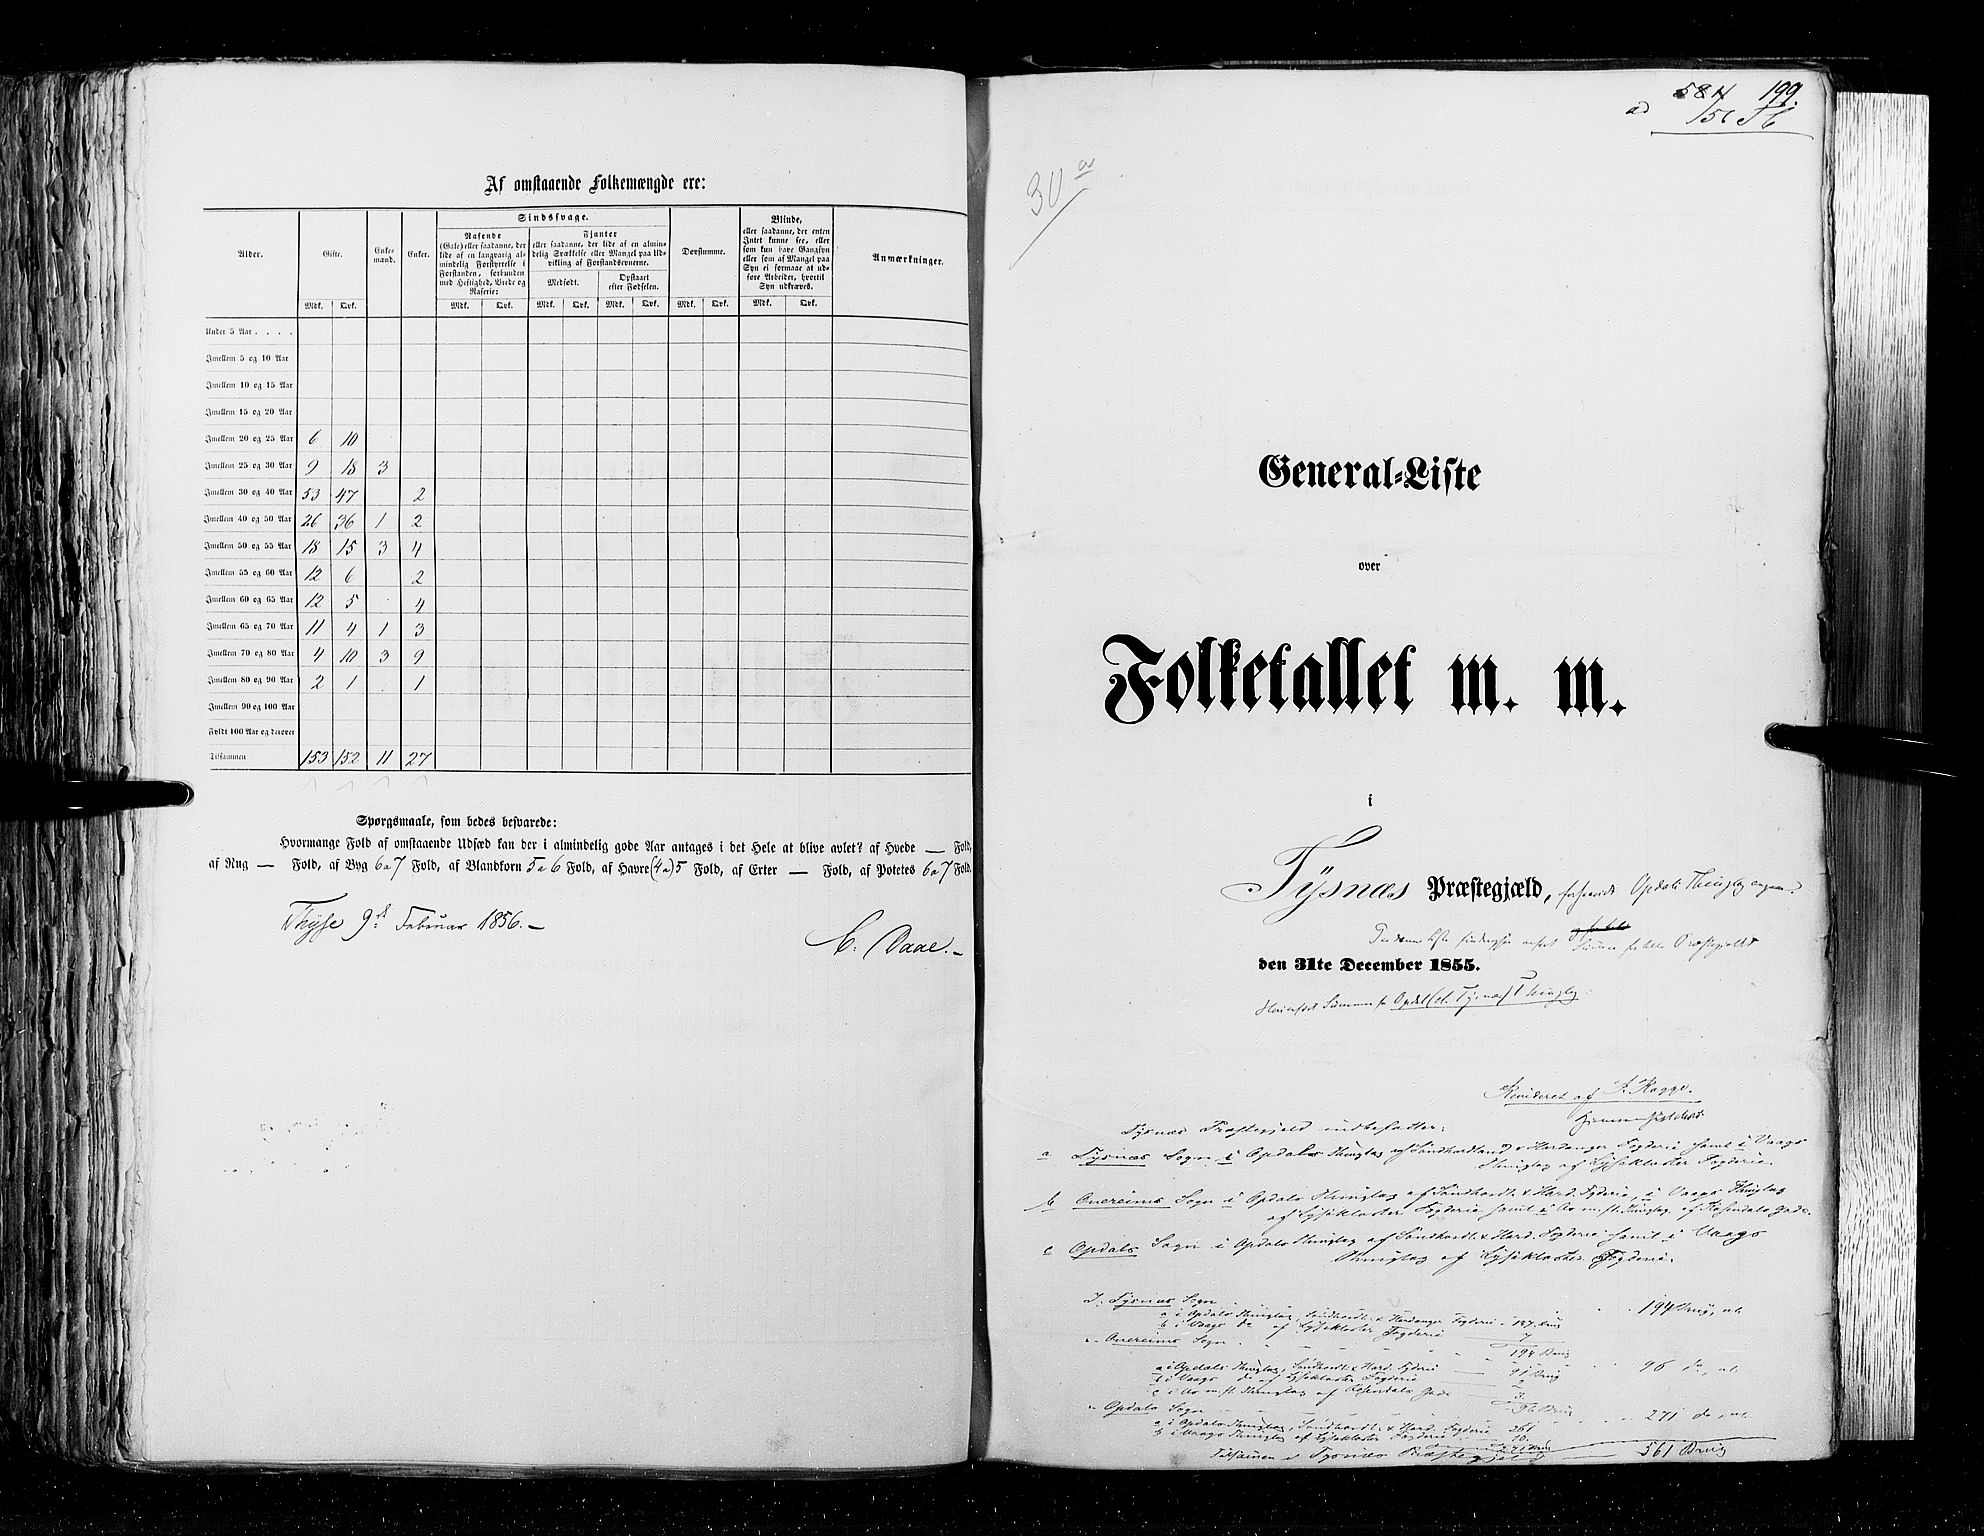 RA, Folketellingen 1855, bind 4: Stavanger amt og Søndre Bergenhus amt, 1855, s. 199